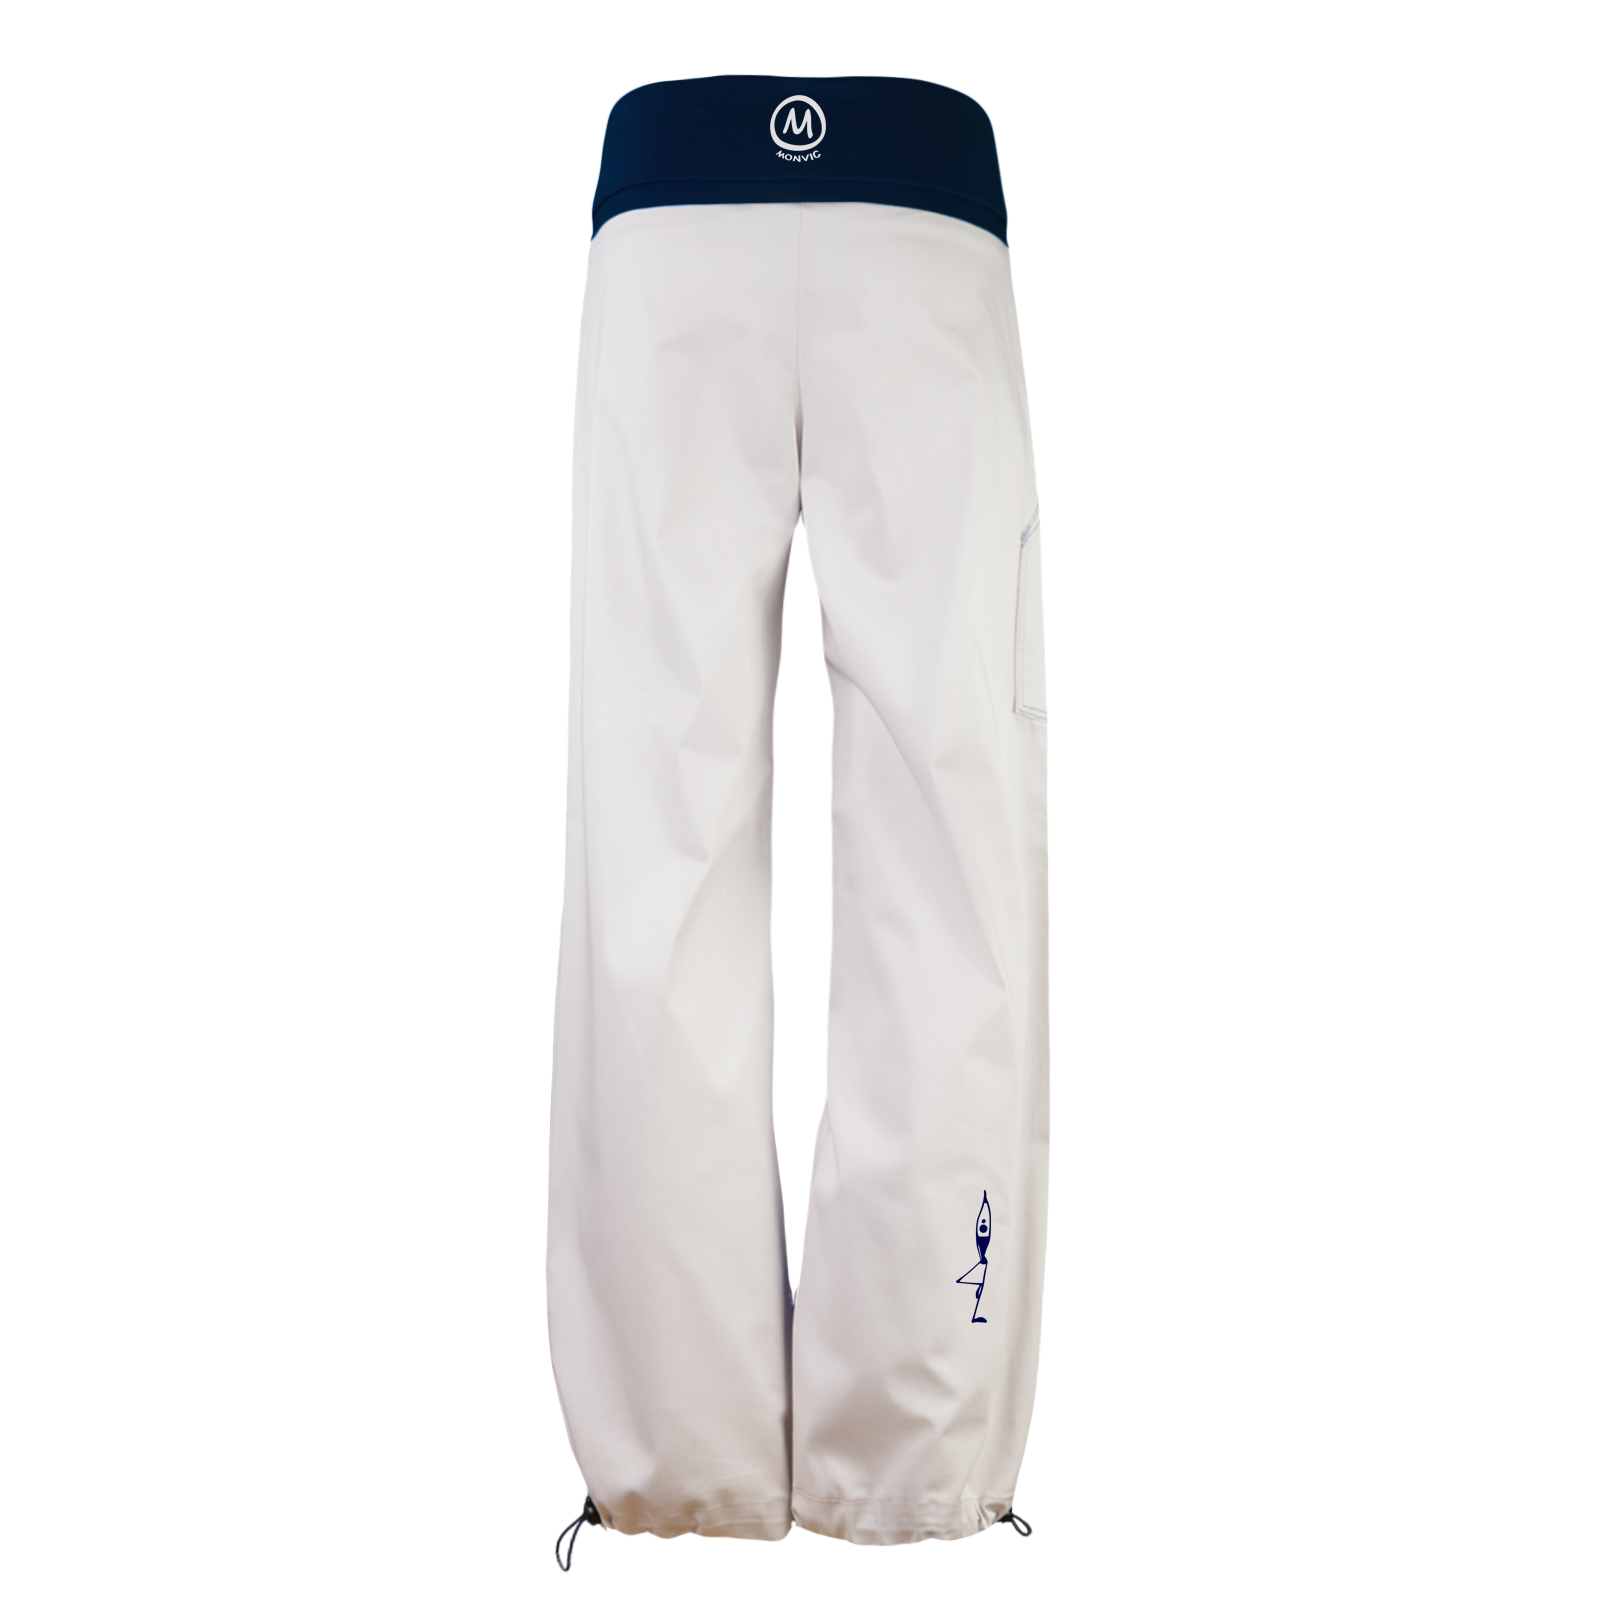 pantalone donna con fascia bianco ghiaccio e blu navy BALZEN Monvic